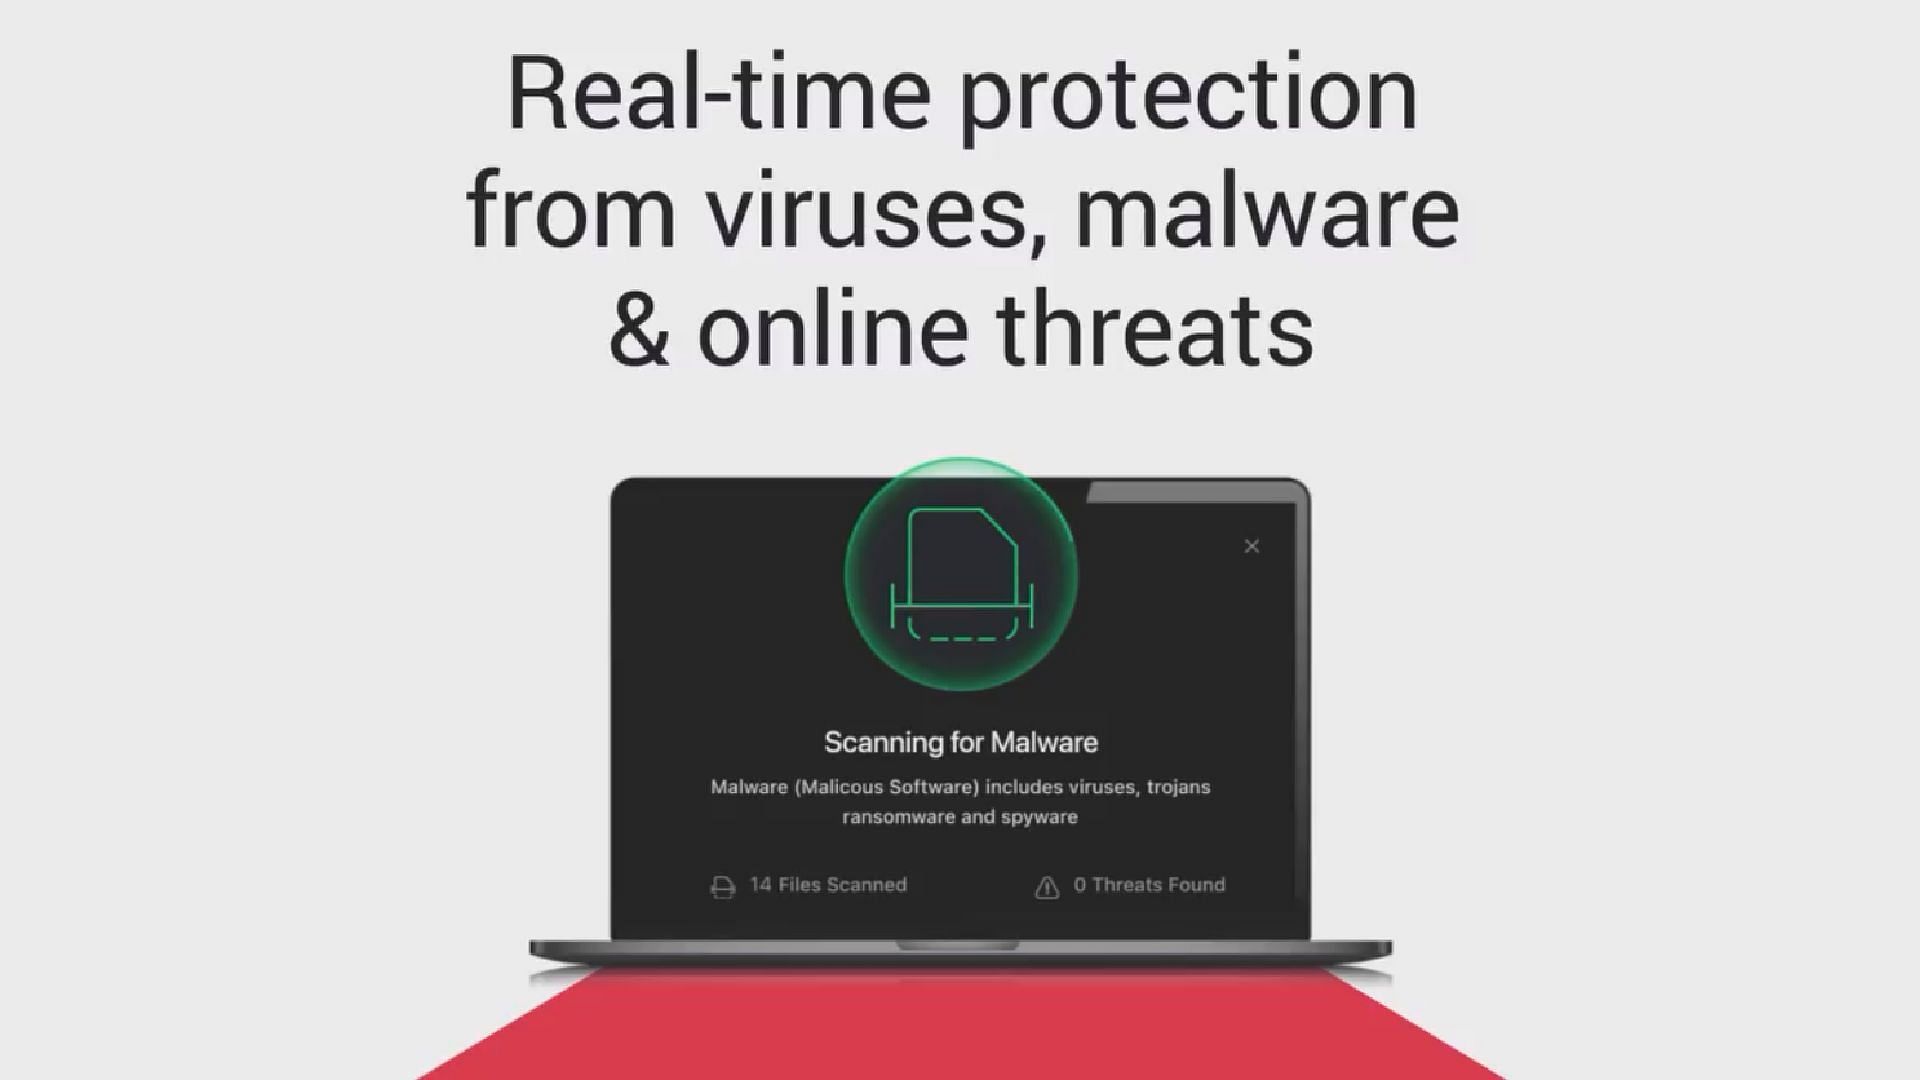 TotalAV scanning for viruses (Image via TotalAV Instagram)